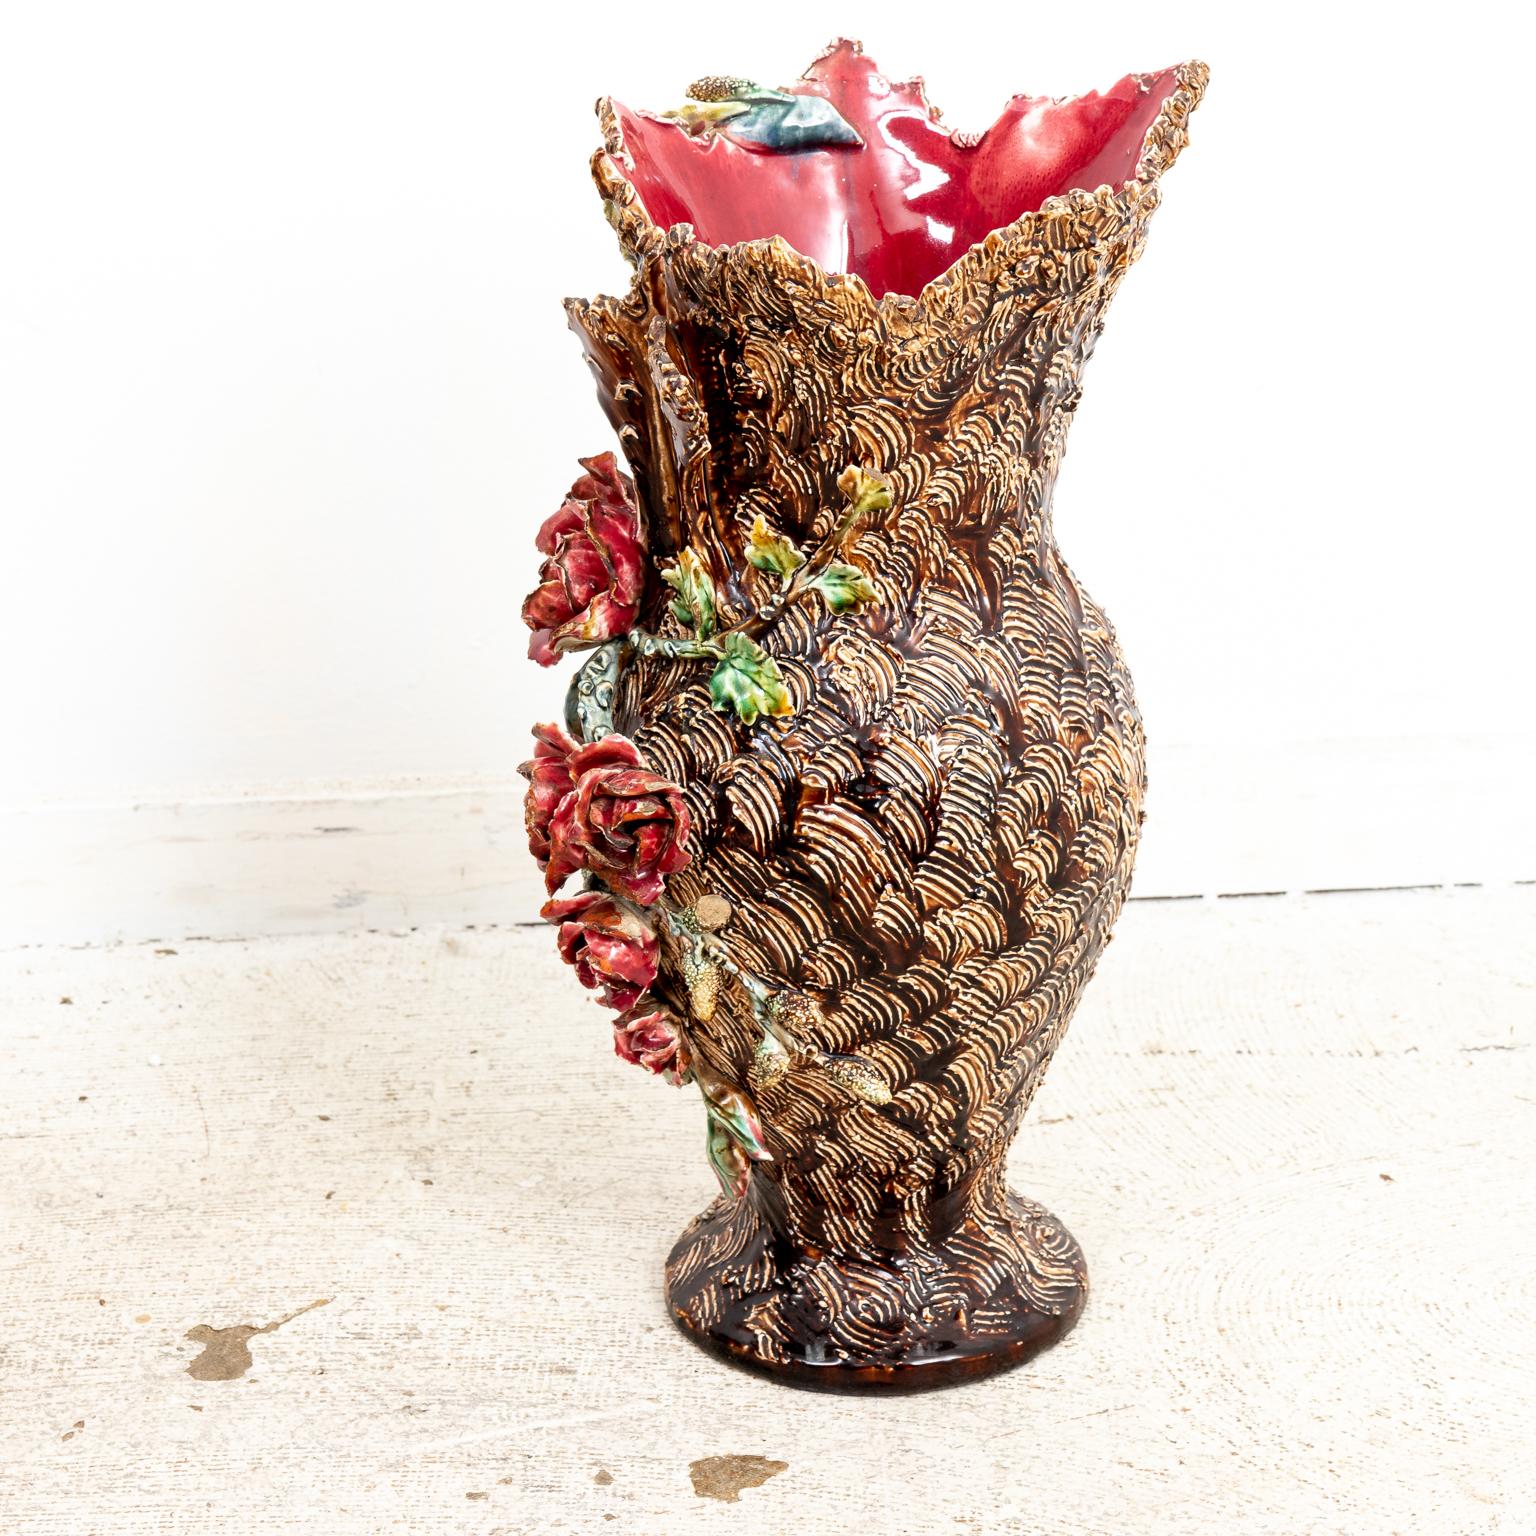 Paire de vases Barbotine en majolique, datant des années 1880, ornés de fleurs de rose avec des poignées en forme de feuille sur un fond brun ressemblant à de l'écorce d'arbre et des feuilles. Ces vases ont été fabriqués au XIXe siècle. Fabriqué en